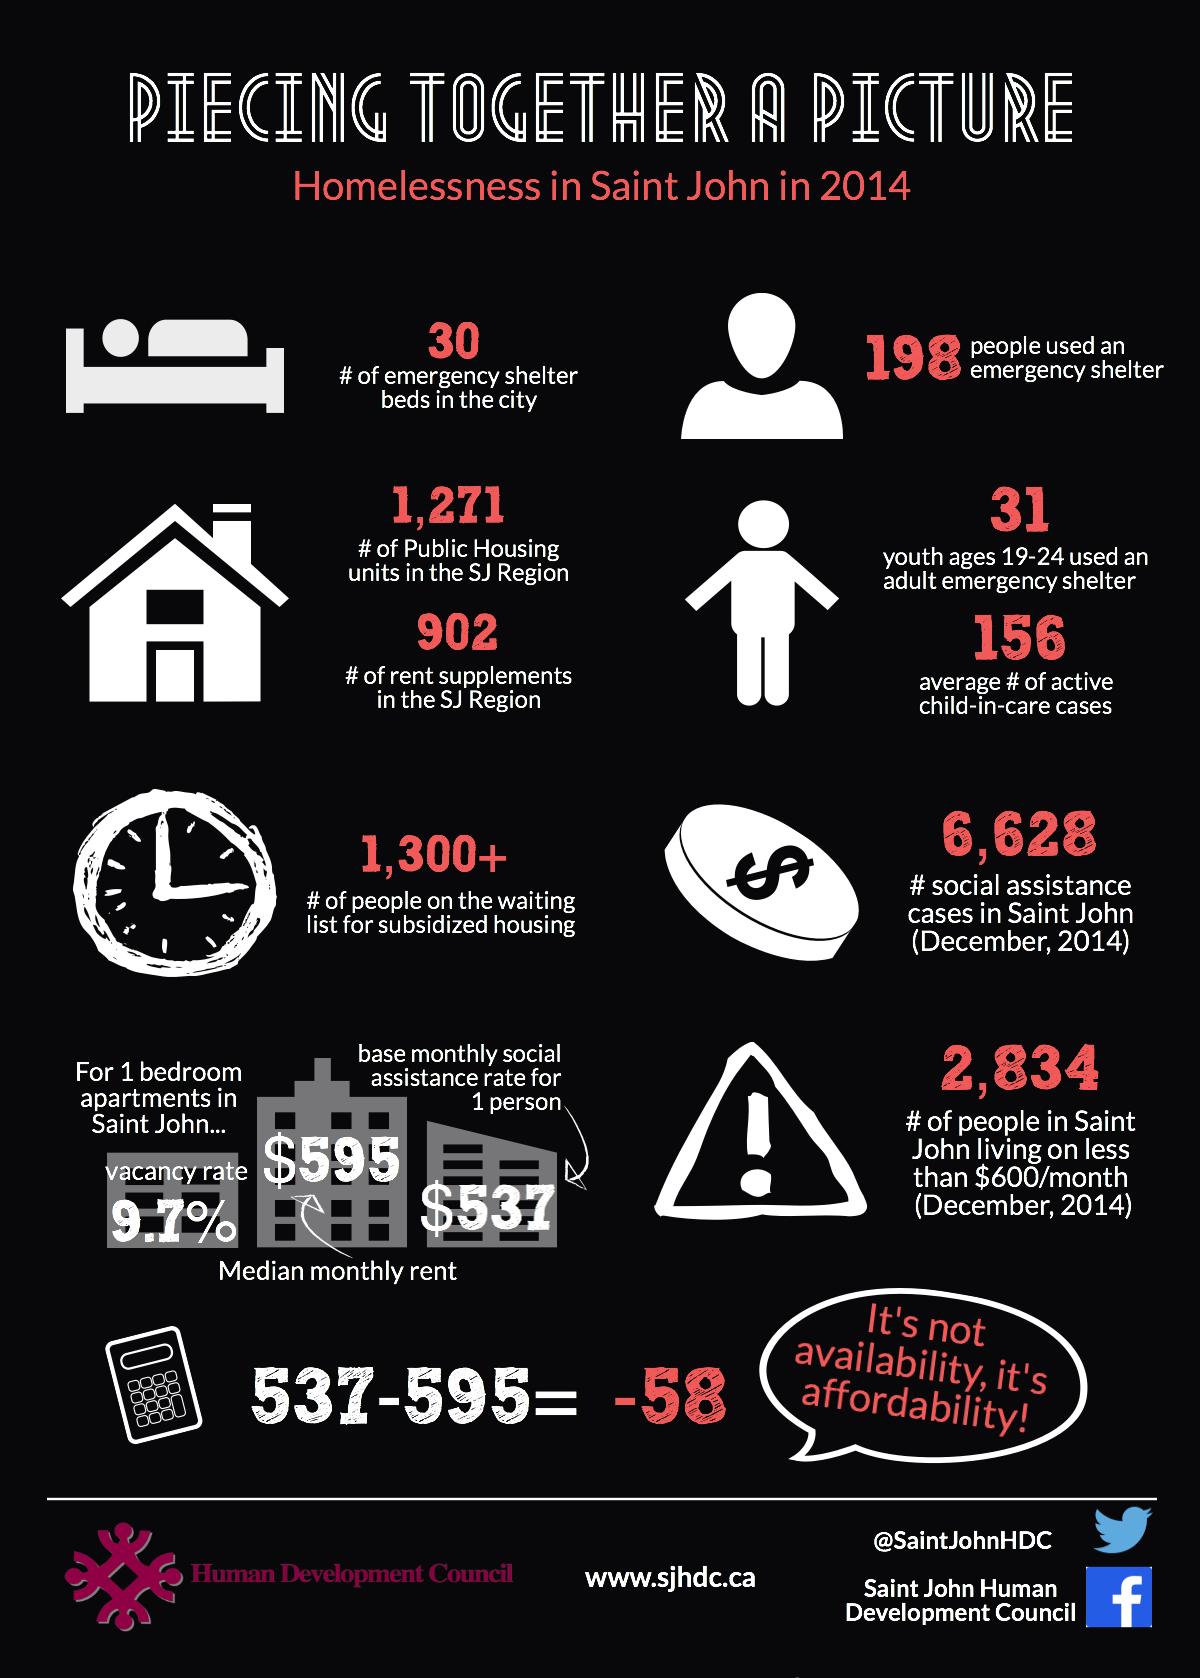 Homelessness in Saint John in 2014 infographic